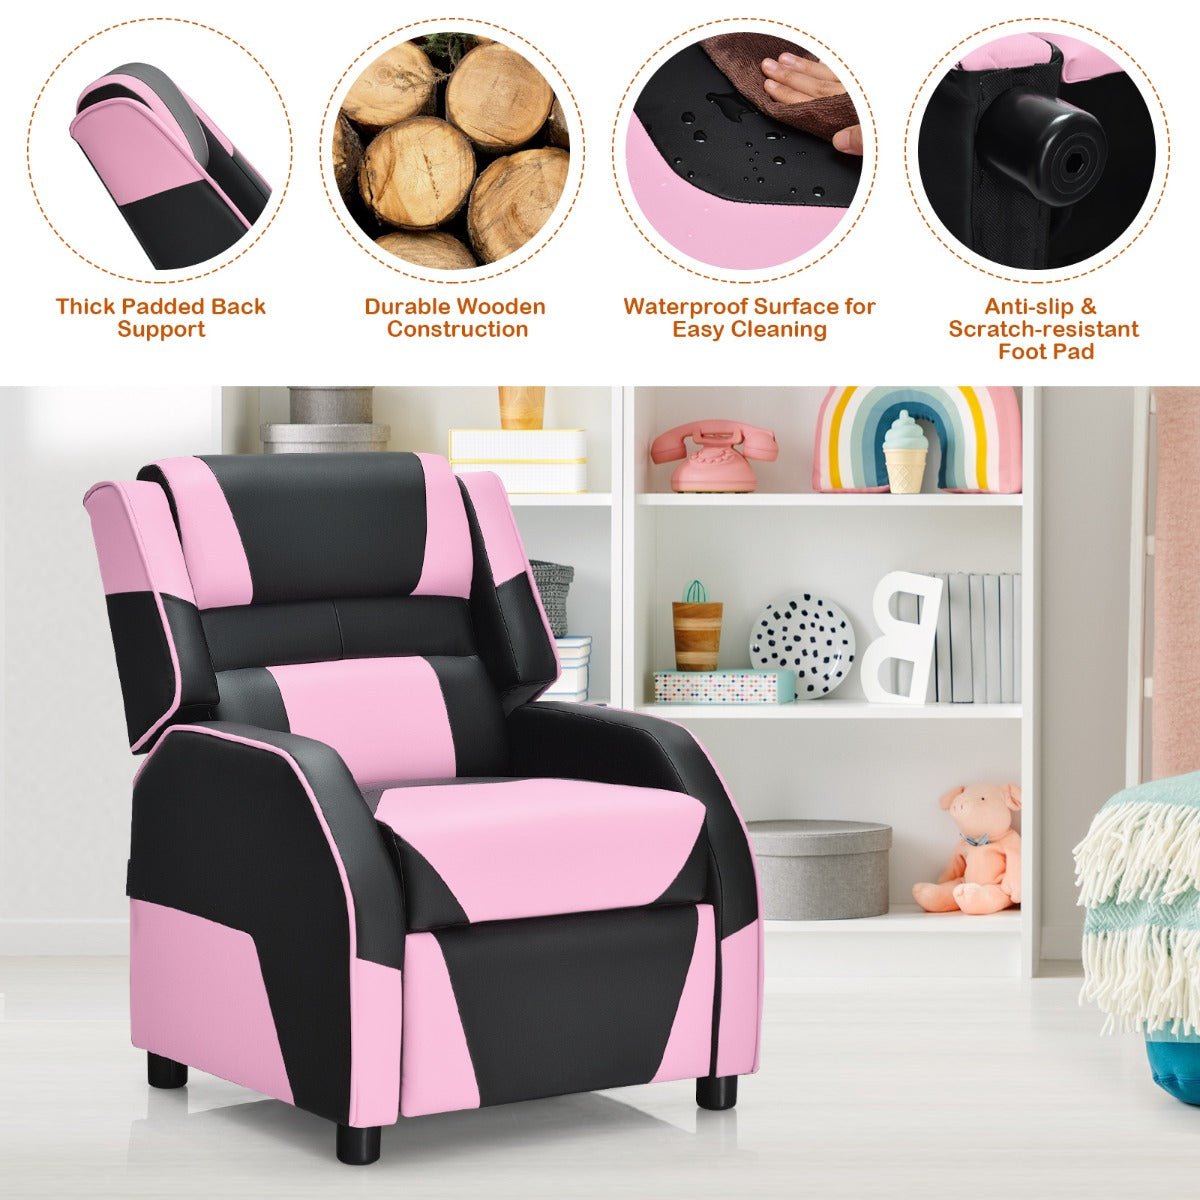 Get Pink Kids Recliner Chair - Adjustable Backrest & Footrest